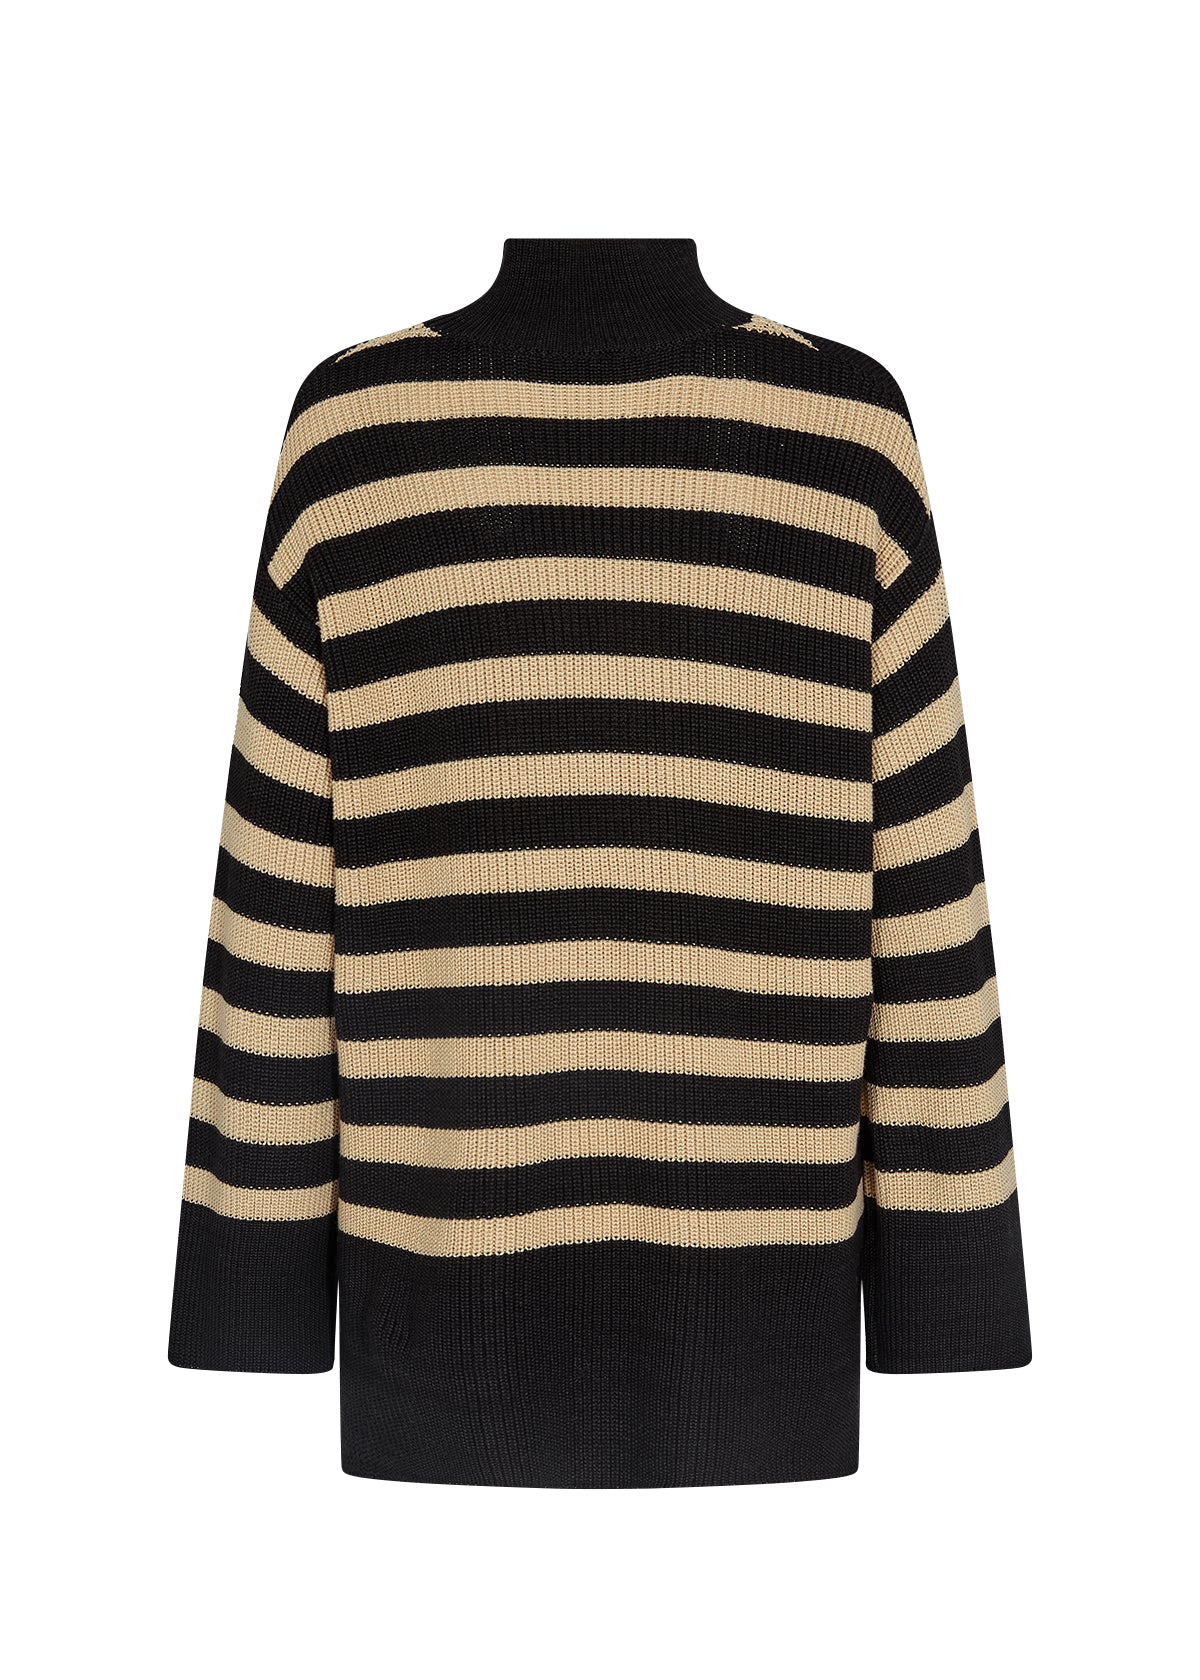 SOYA CONCEPT JULIA 6 Black & Tan Striped Knit